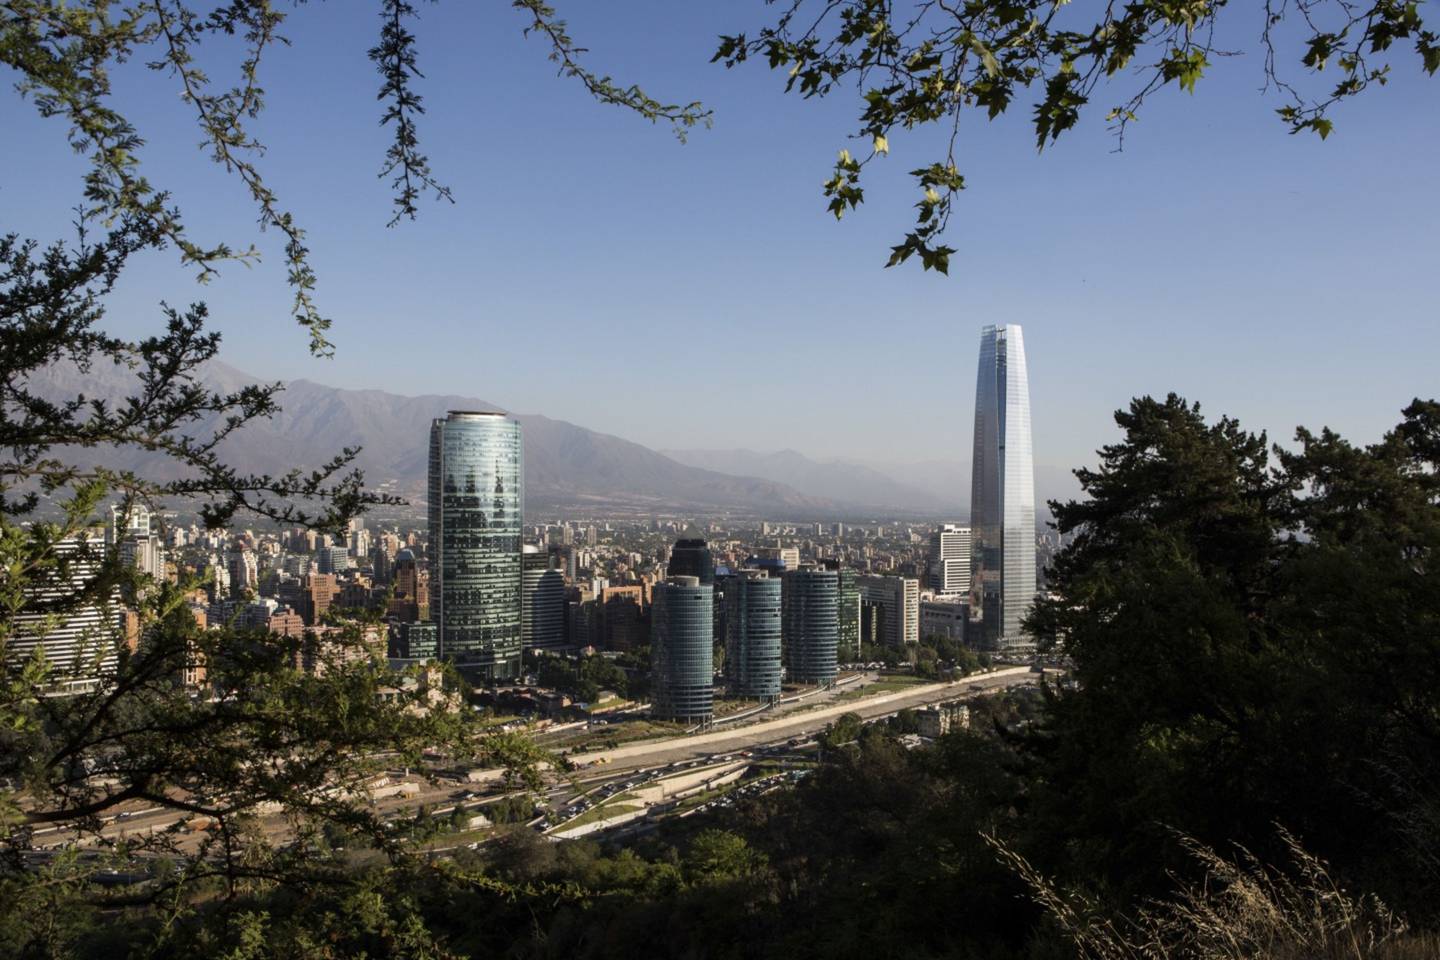 Santiago de Chile. Photographer: Ronald Patrick/Bloomberg